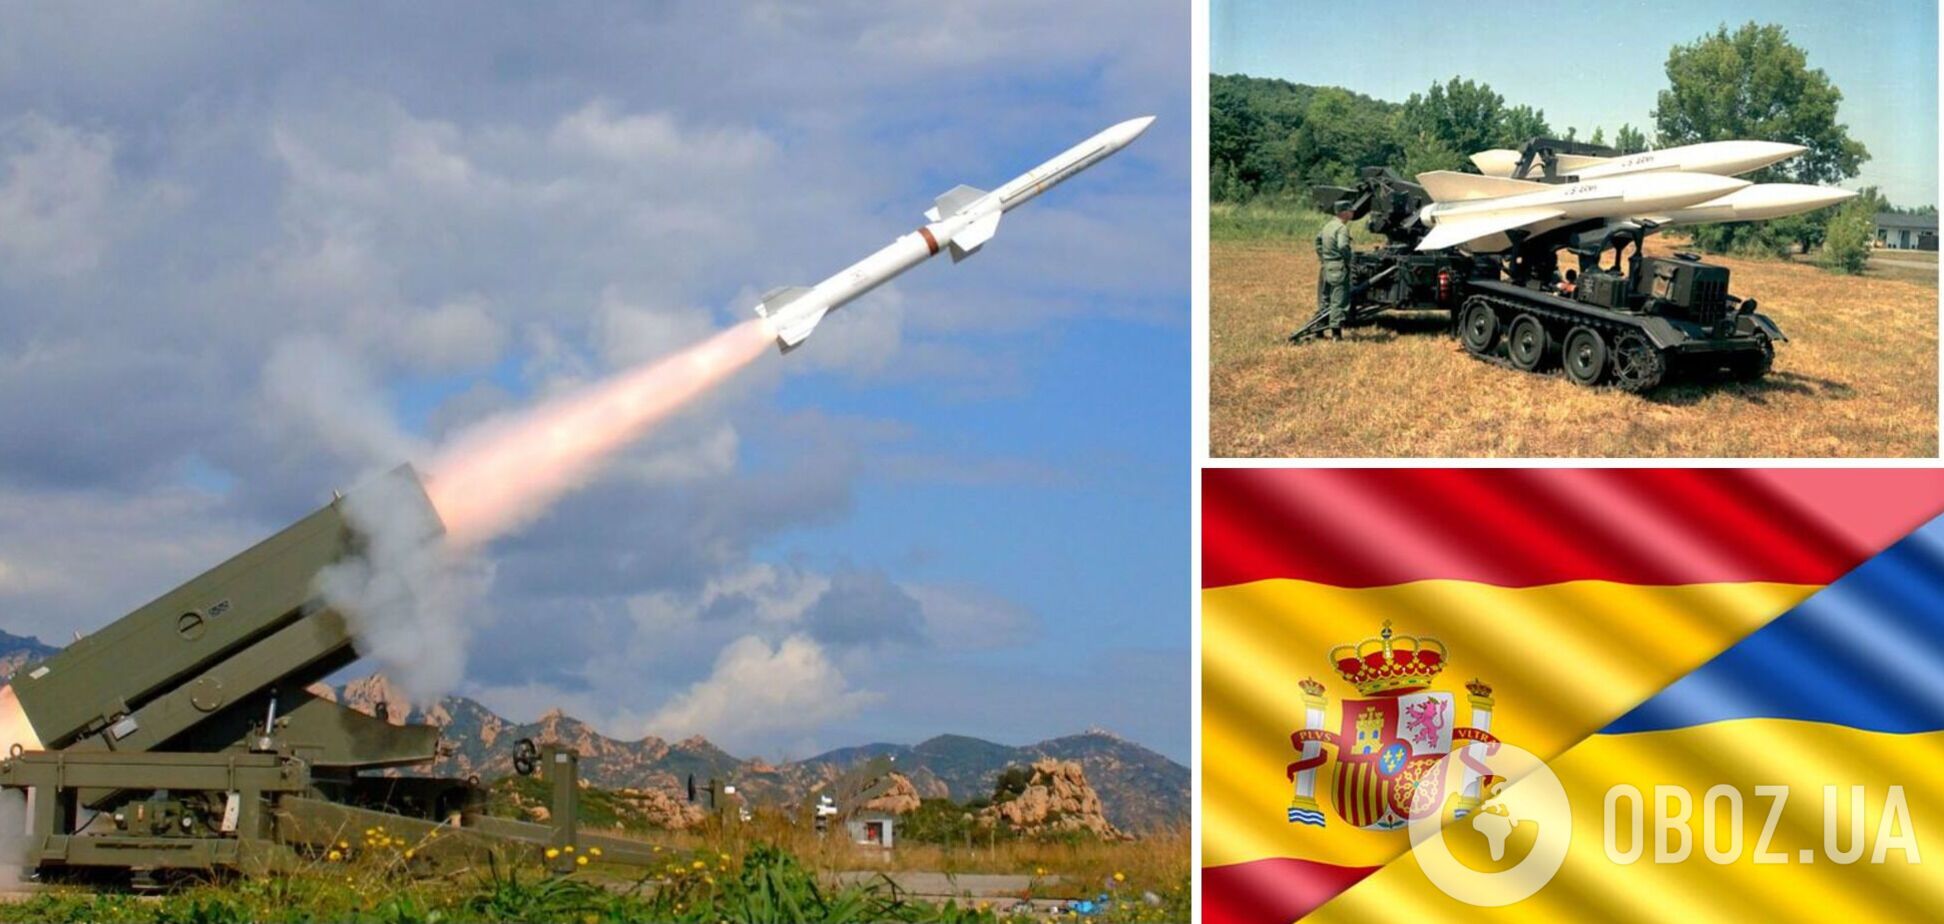 Испания передаст Украине ЗРК Aspide и четыре системы ПВО Hawk, вооружение уже в пути, – Кулеба